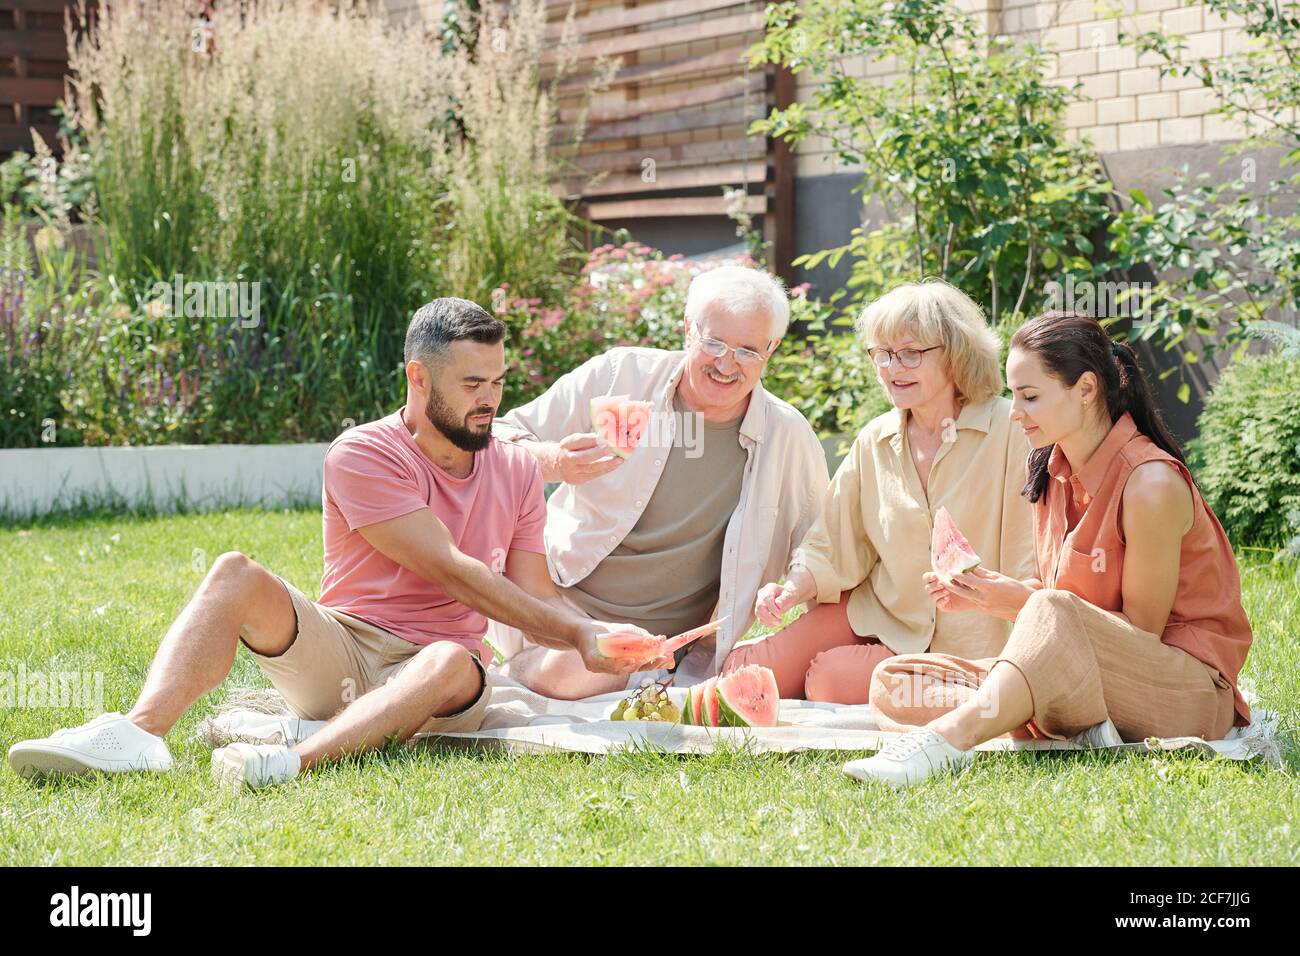 Familienfoto von älteren Mann und Frau mit Picknick Ihre jungen erwachsenen Kinder auf dem Rasen Stockfoto